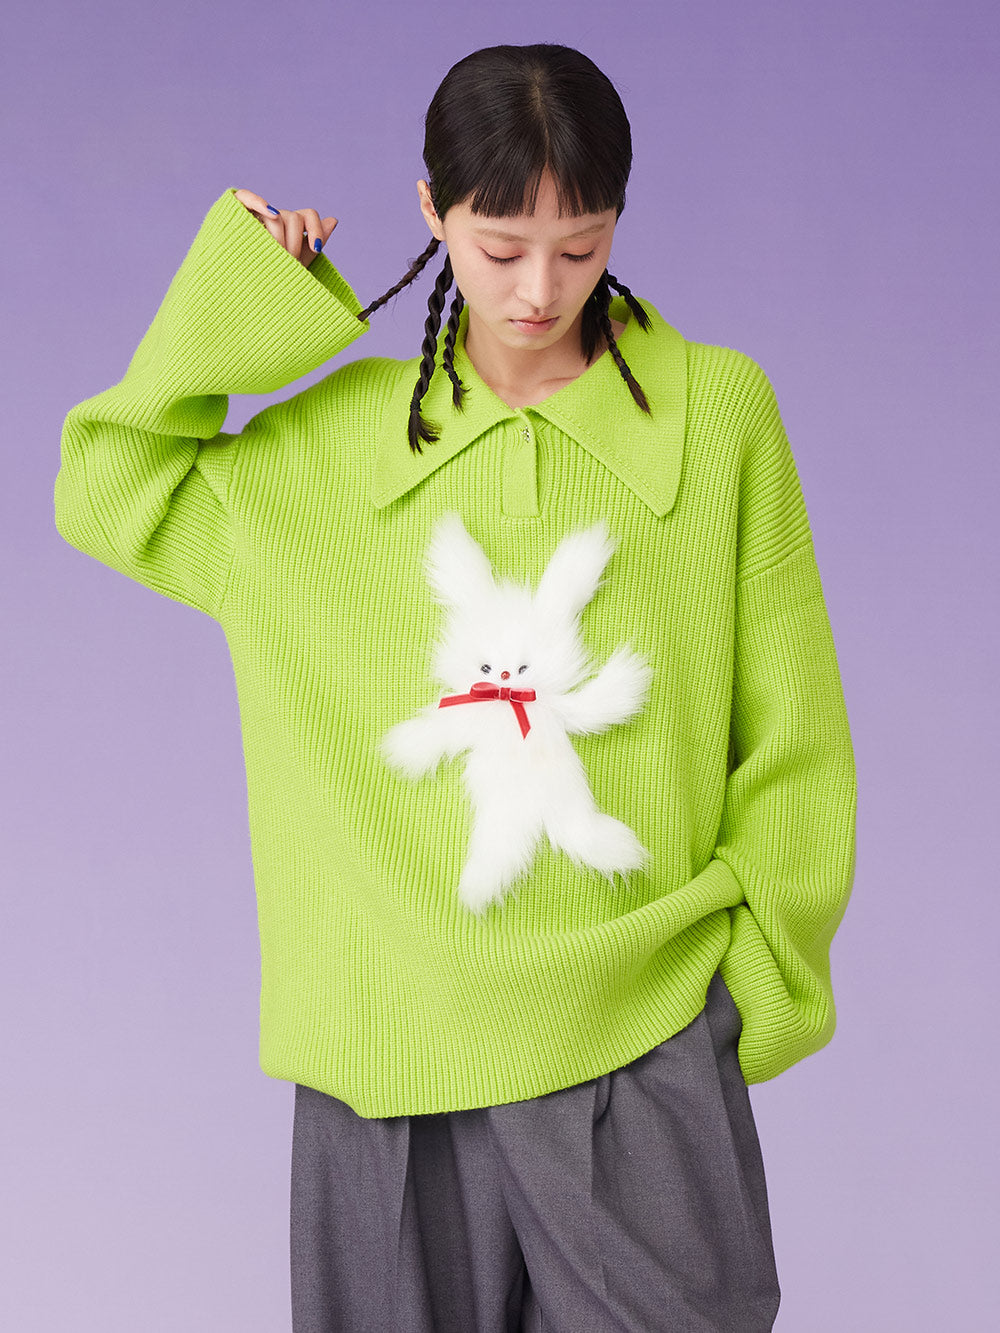 MUKZIN Rib-Knit Retro Loose Polo Neck Pullover Green Sweater